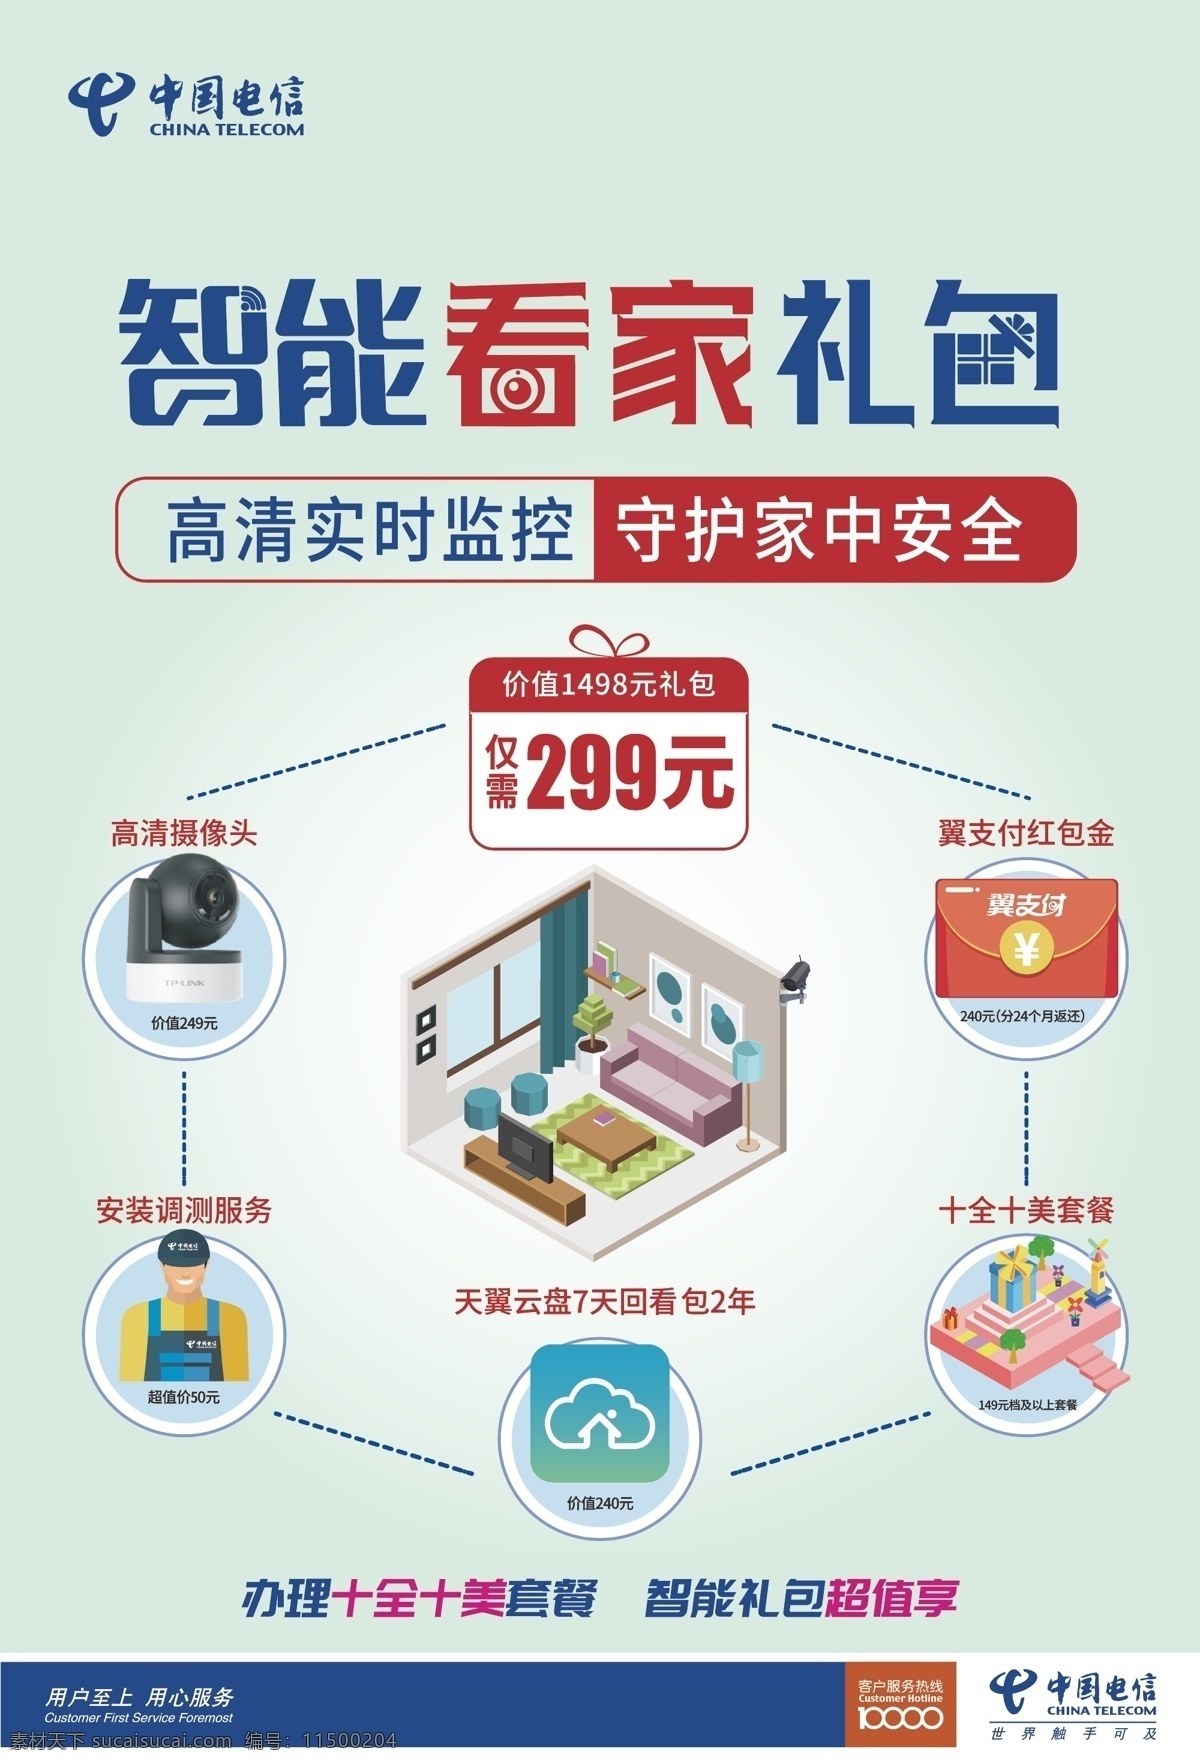 中国电信 泛 智能 礼包 海报 泛智能 看家 遥控 娱乐 小图标 摄像头 音箱 红包 展板模板